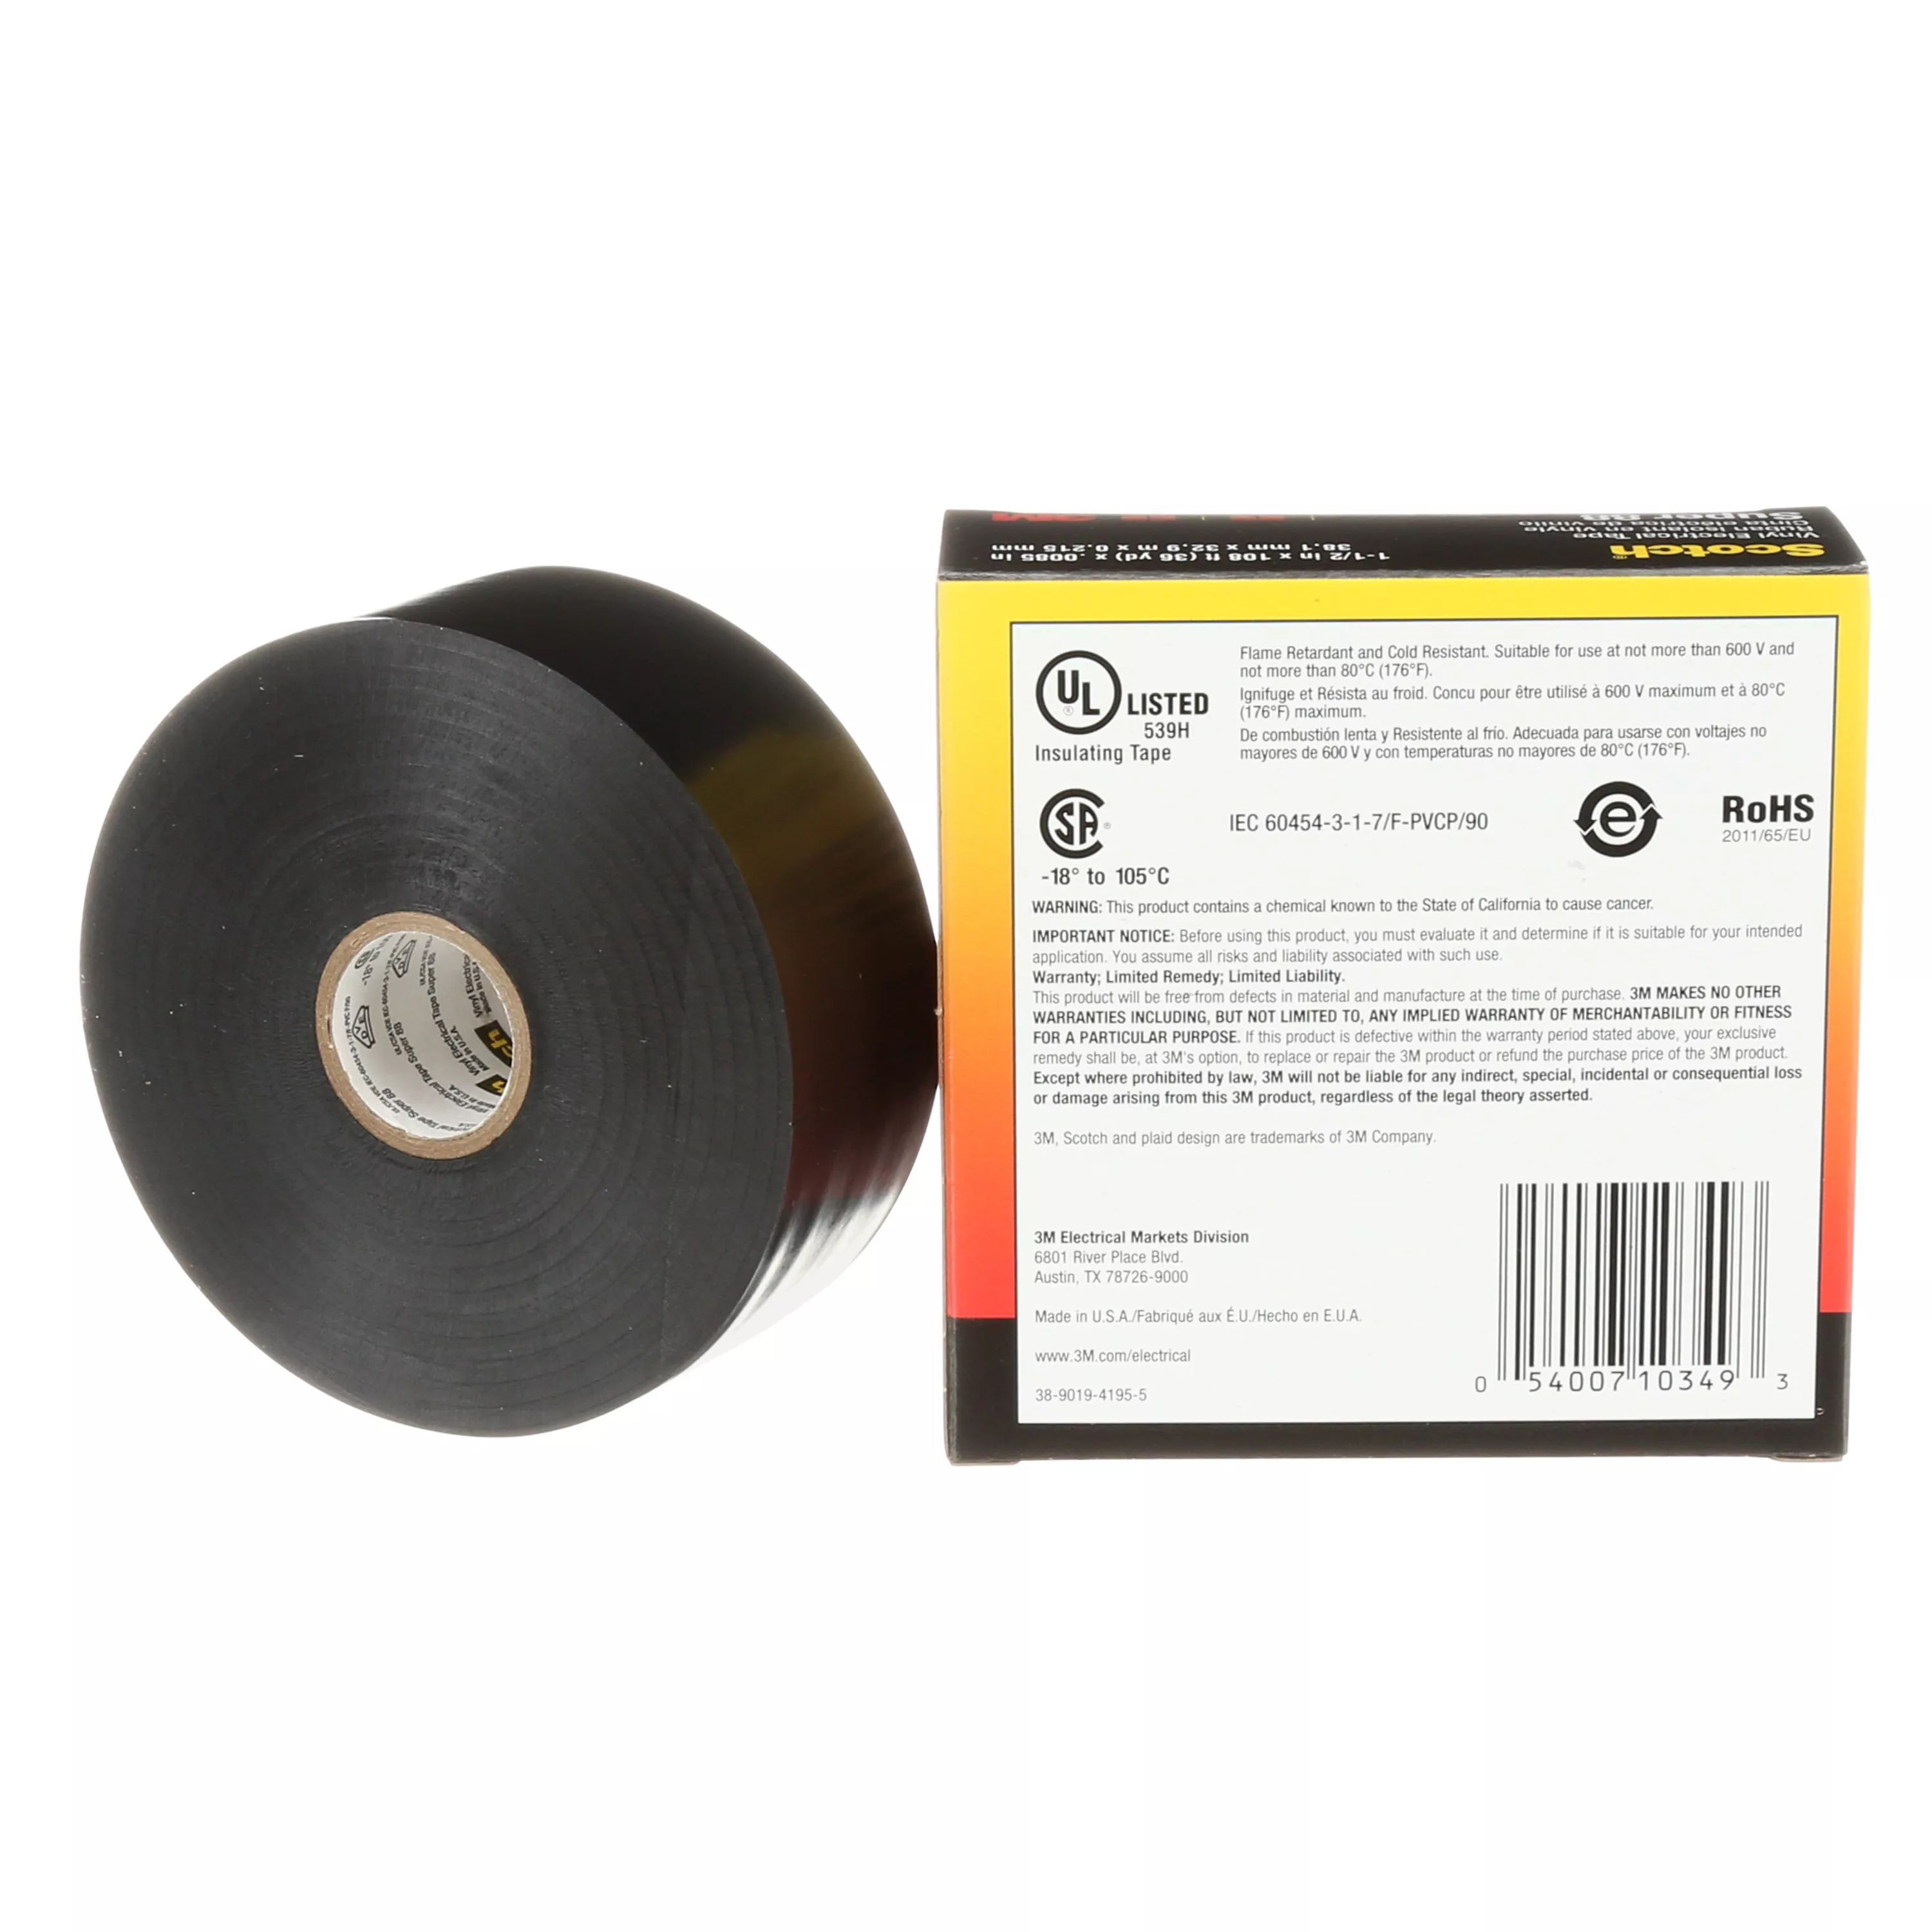 7000031459 | Scotch® Vinyl Electrical Tape Super 88